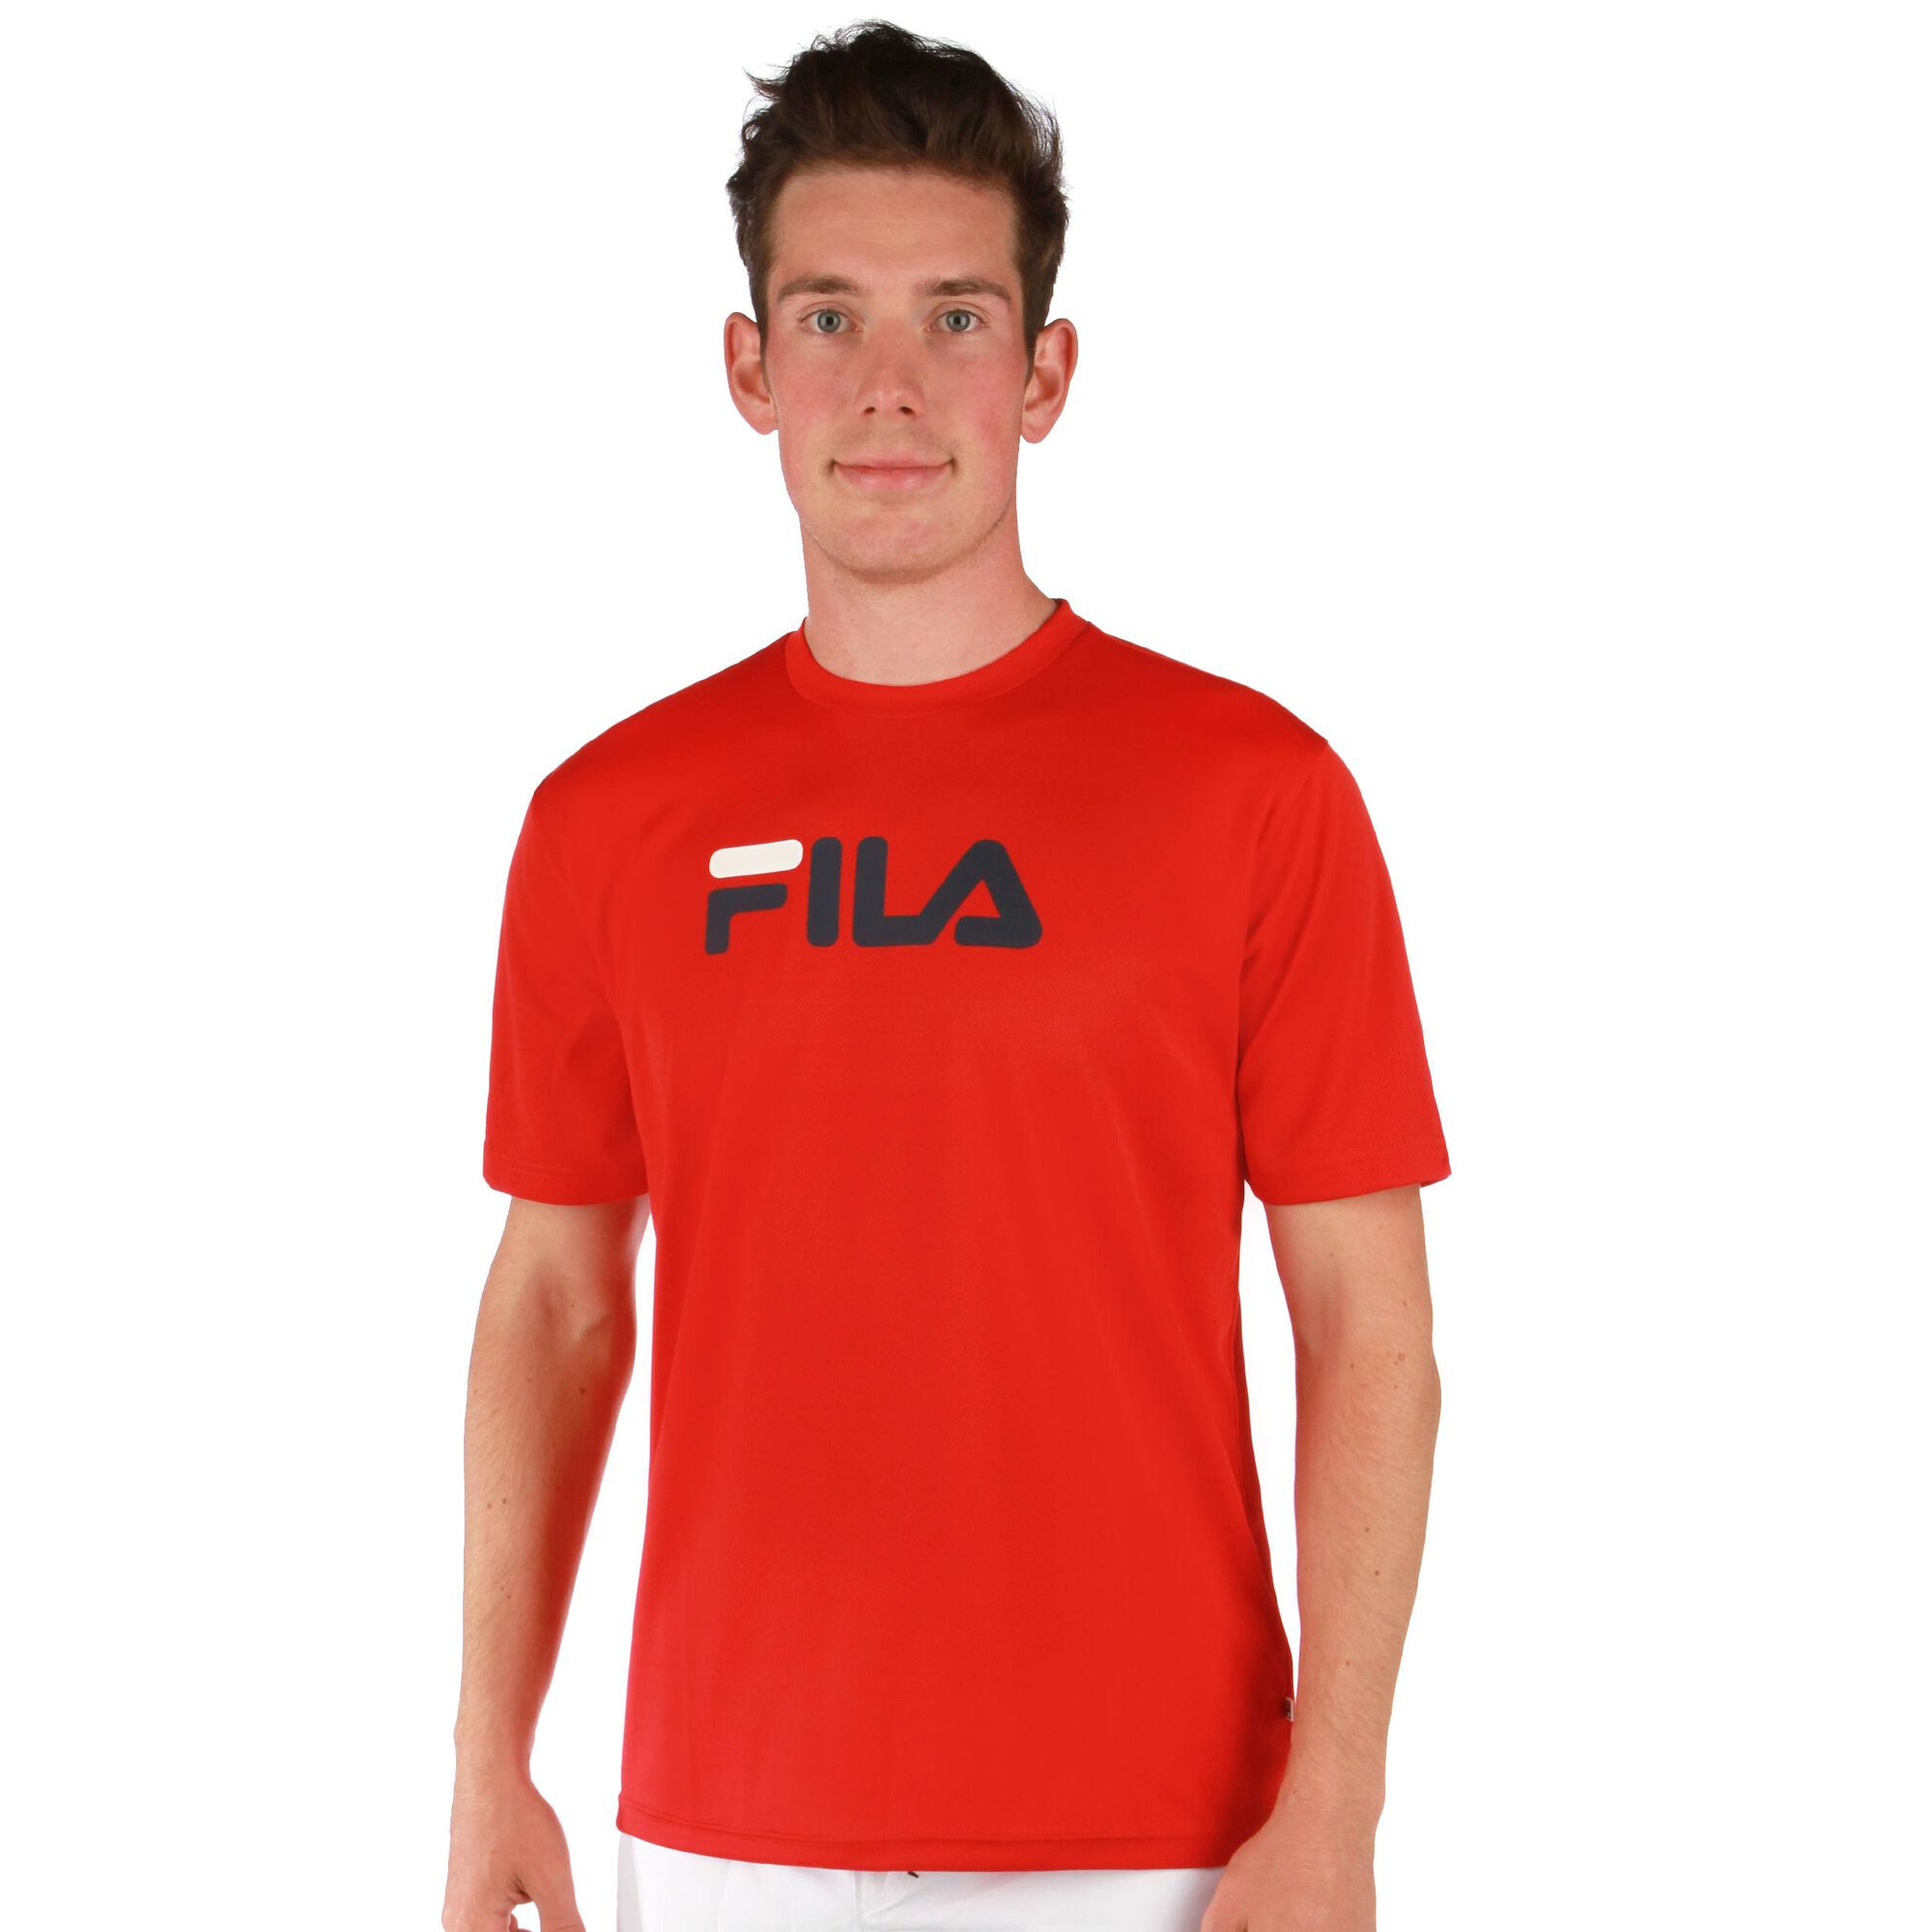 Meesterschap Excentriek Notebook Fila Logo T-shirt Heren - Rood, Zwart online kopen | Tennis-Point